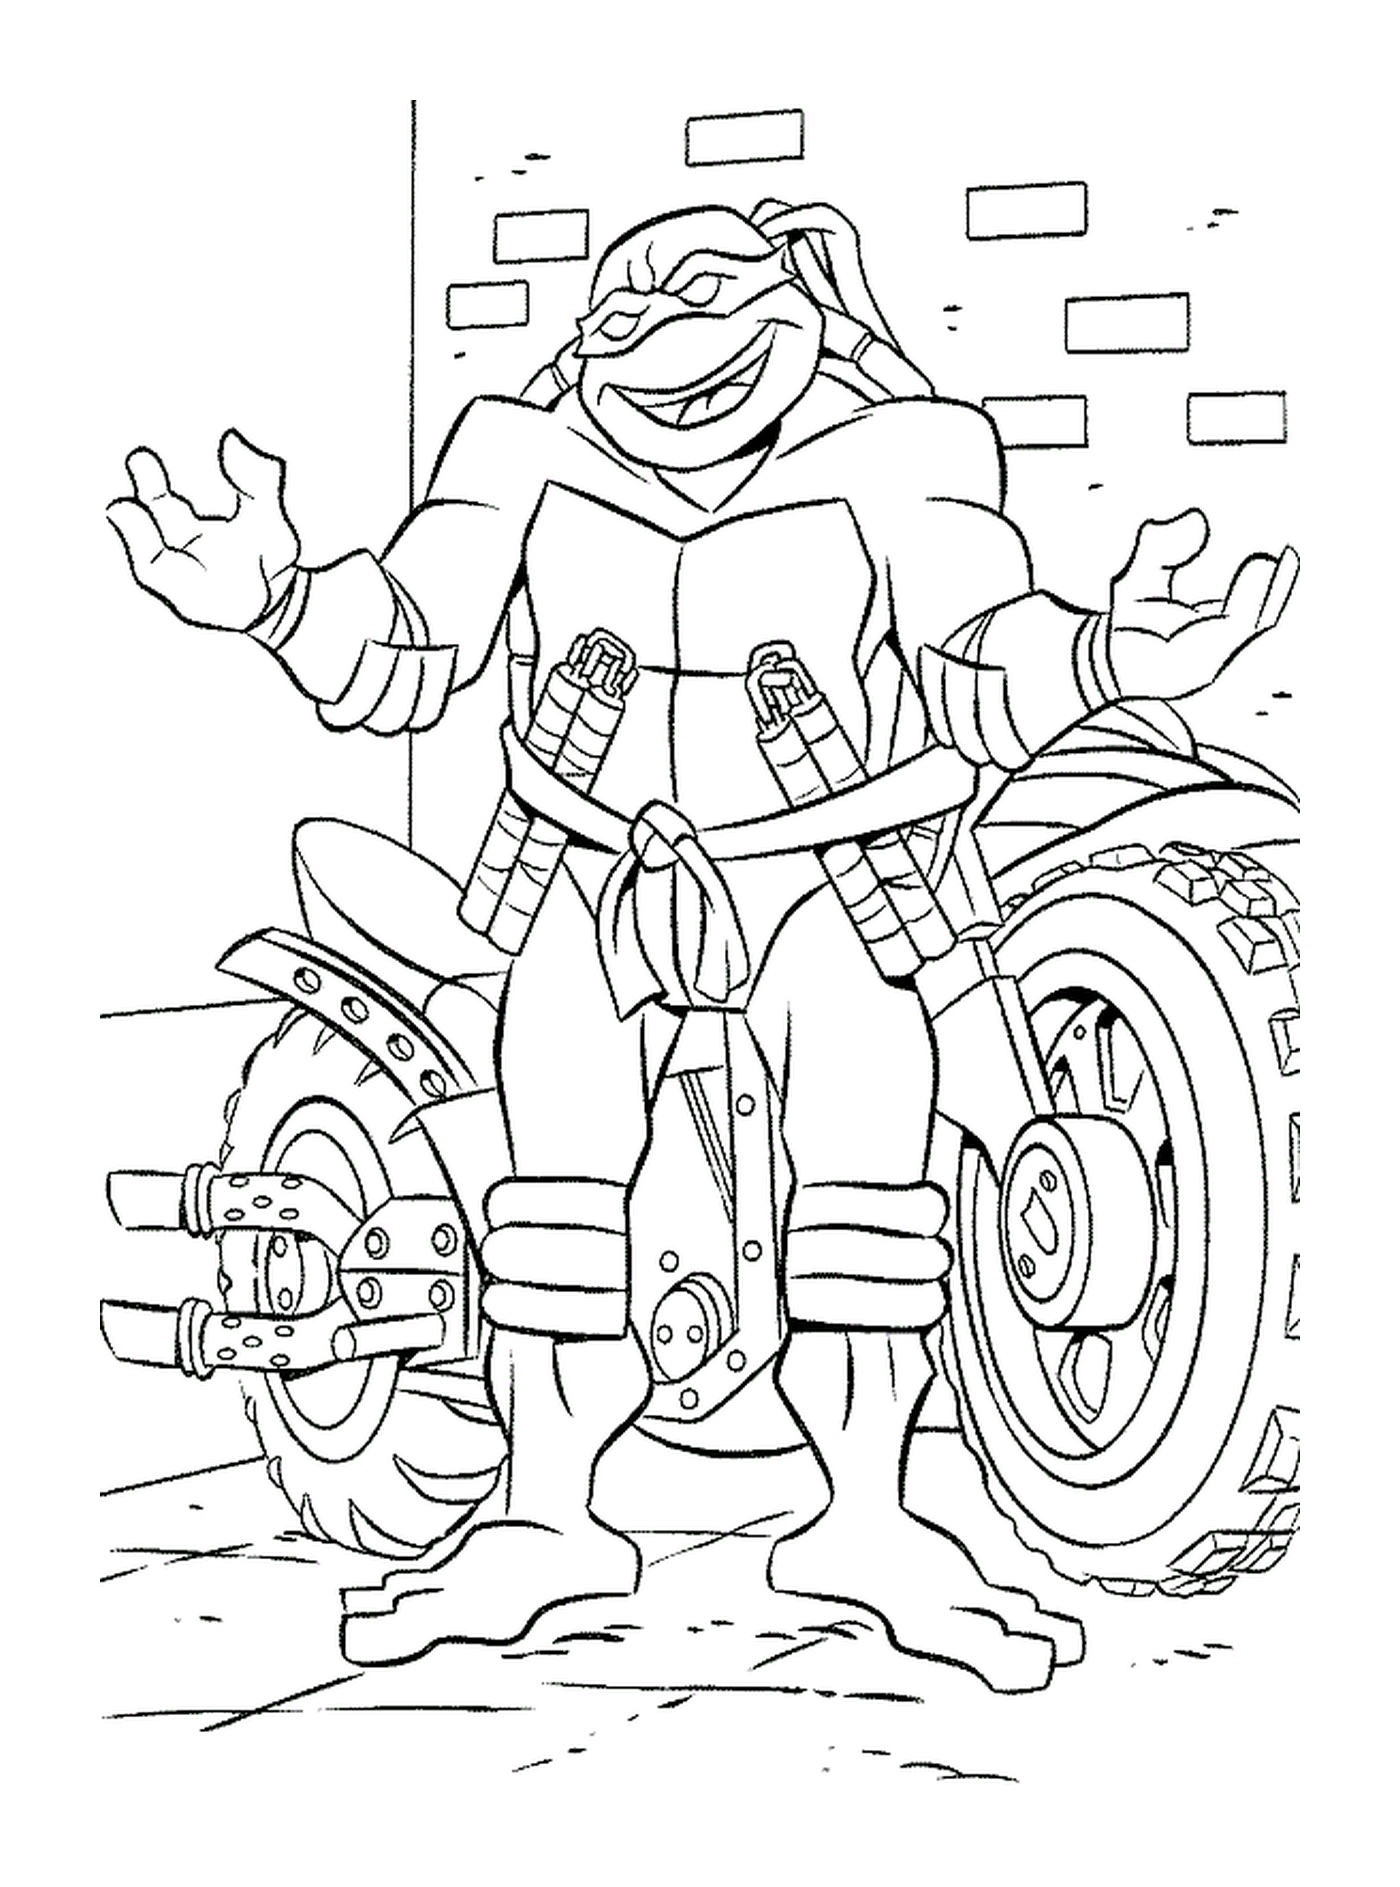  Черепаха мотоцикла < < Ниндзя > > 